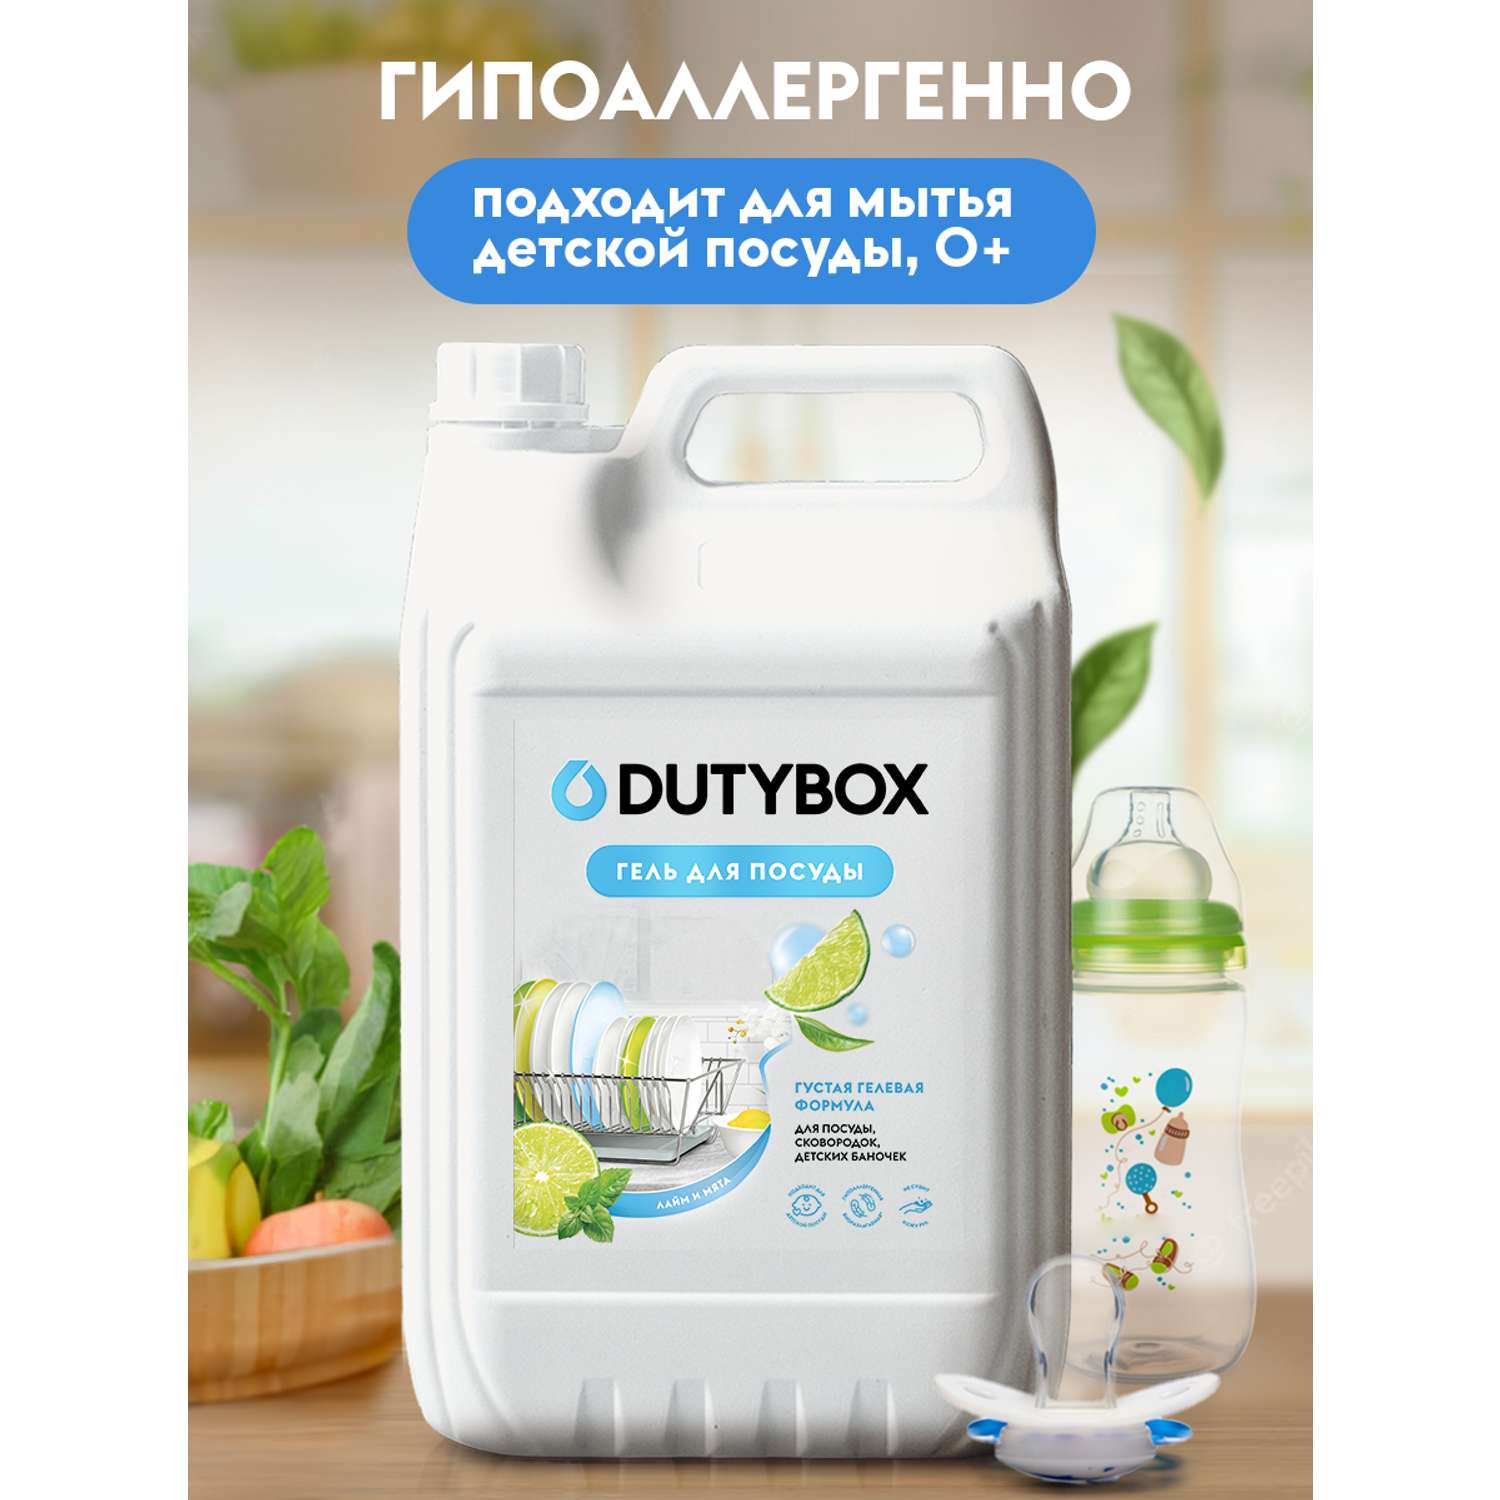 Гель для мытья посуды DUTYBOX 5 л гипоаллергенный 0+ - фото 2